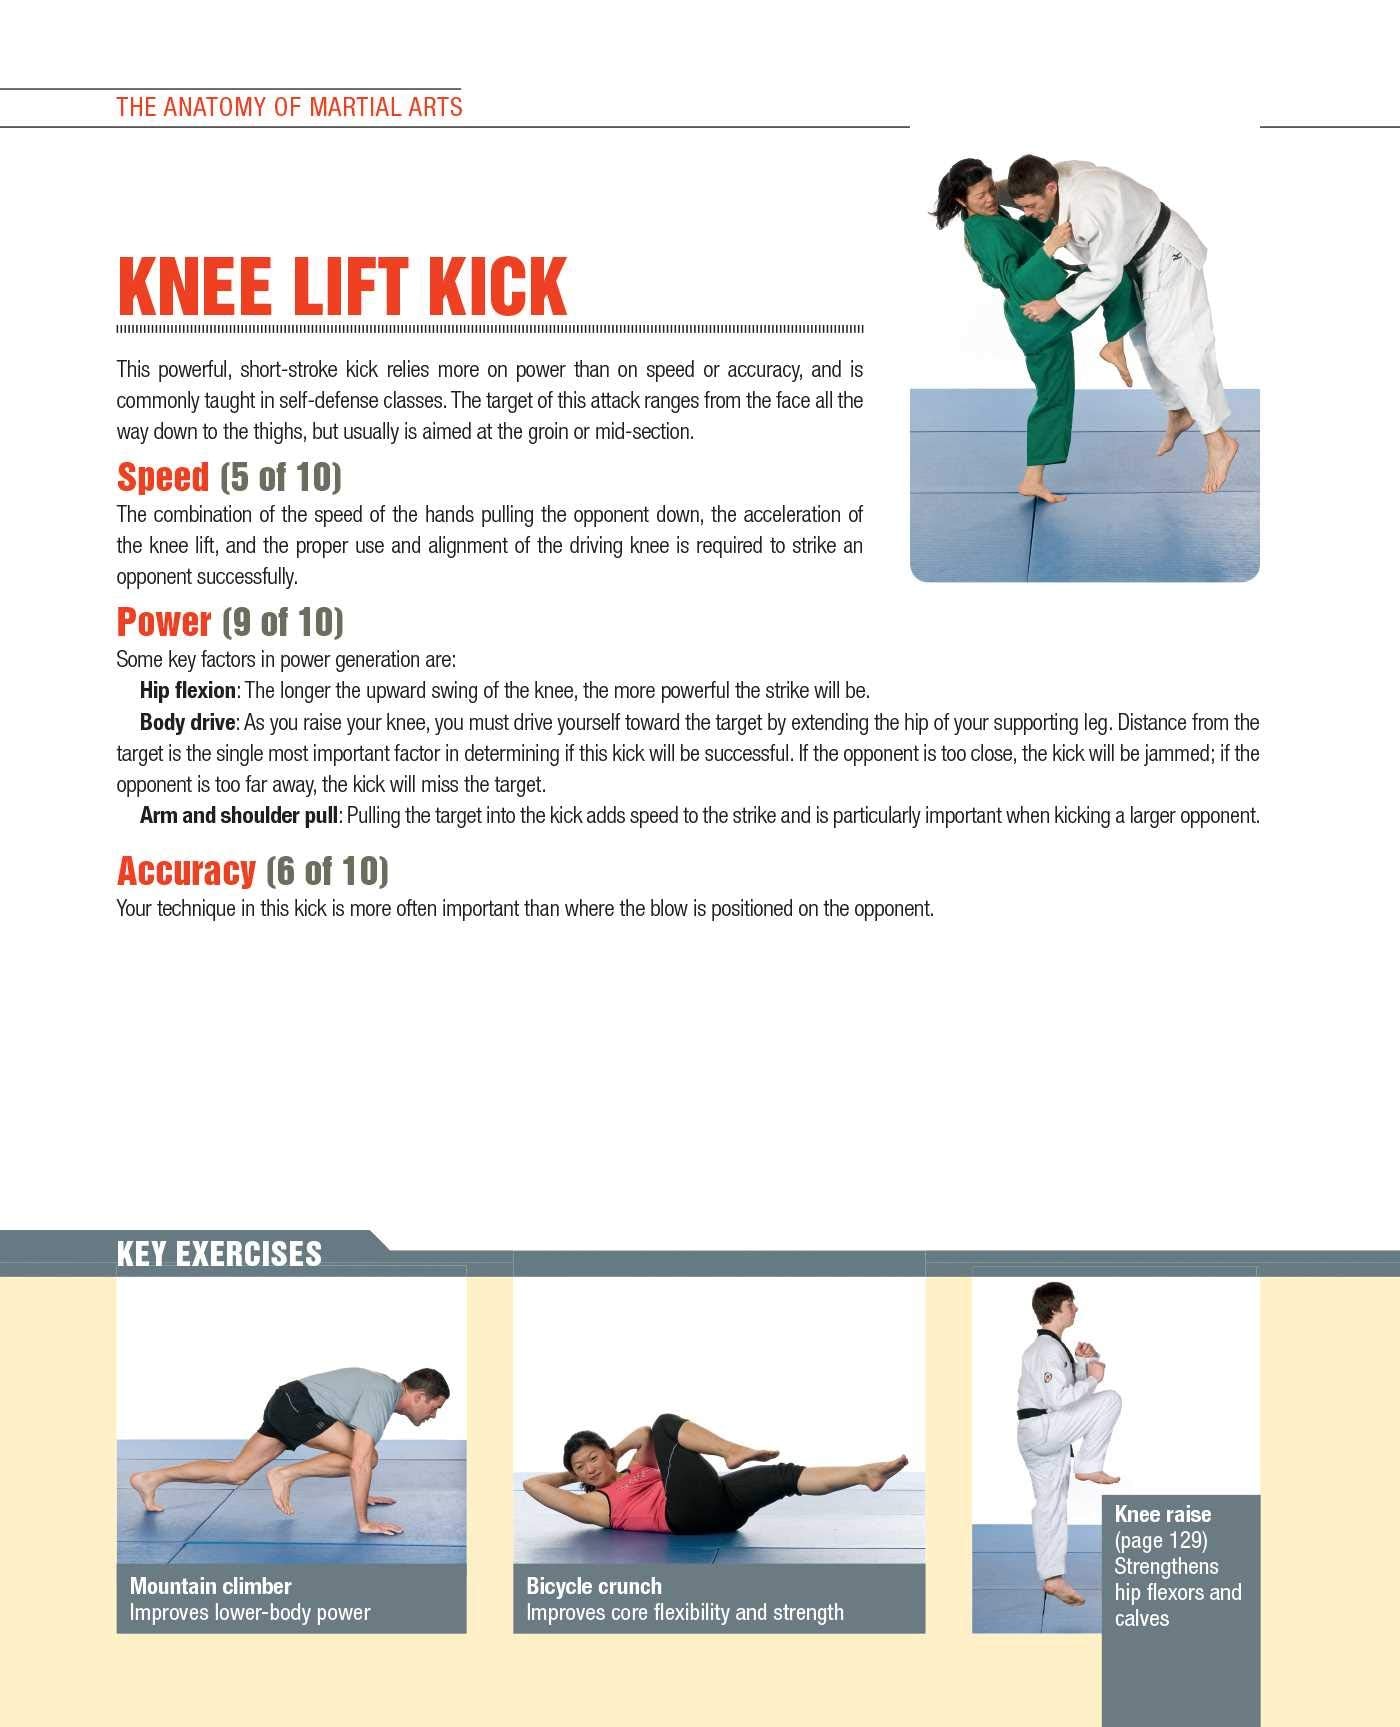 武道の解剖学: 打撃、蹴り、投げの各動作に使用される筋肉の図解ガイド (中古)